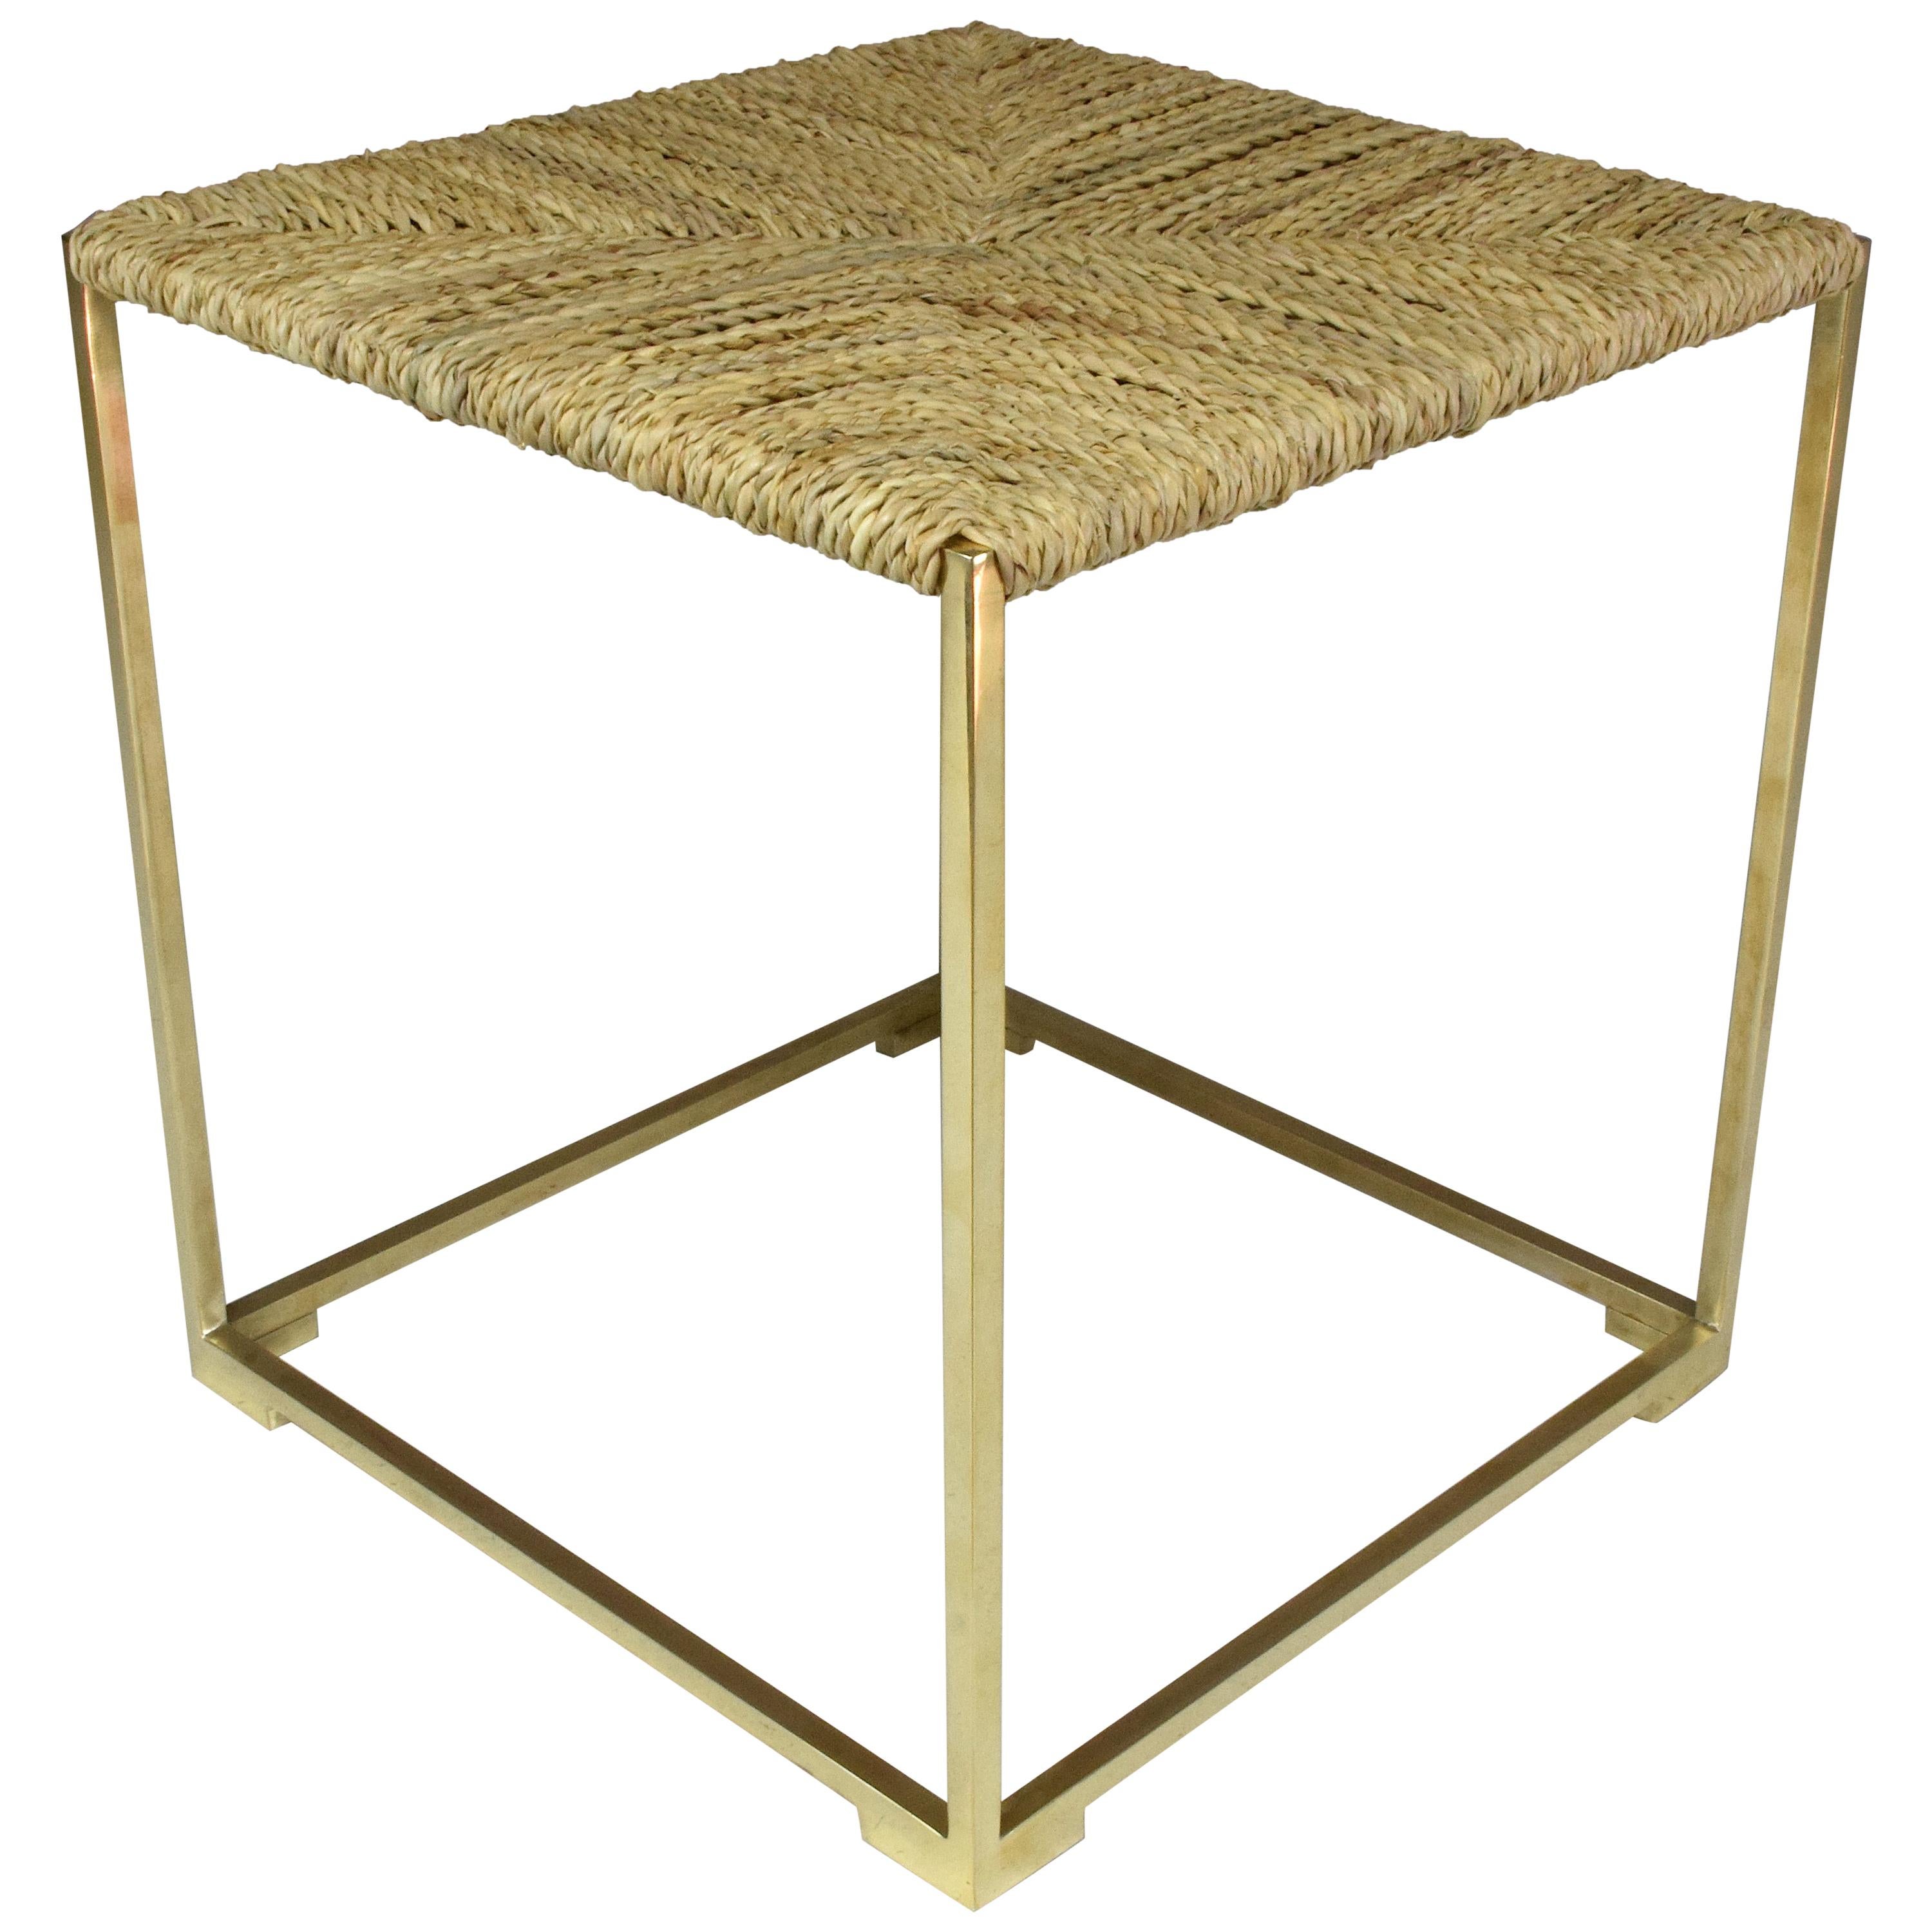 Un tabouret ou banc carré contemporain fabriqué à la main, conçu dans une structure en laiton doré - ici en finition polie - avec un dessus tissé à la main dans une fibre naturelle marocaine très résistante appelée 